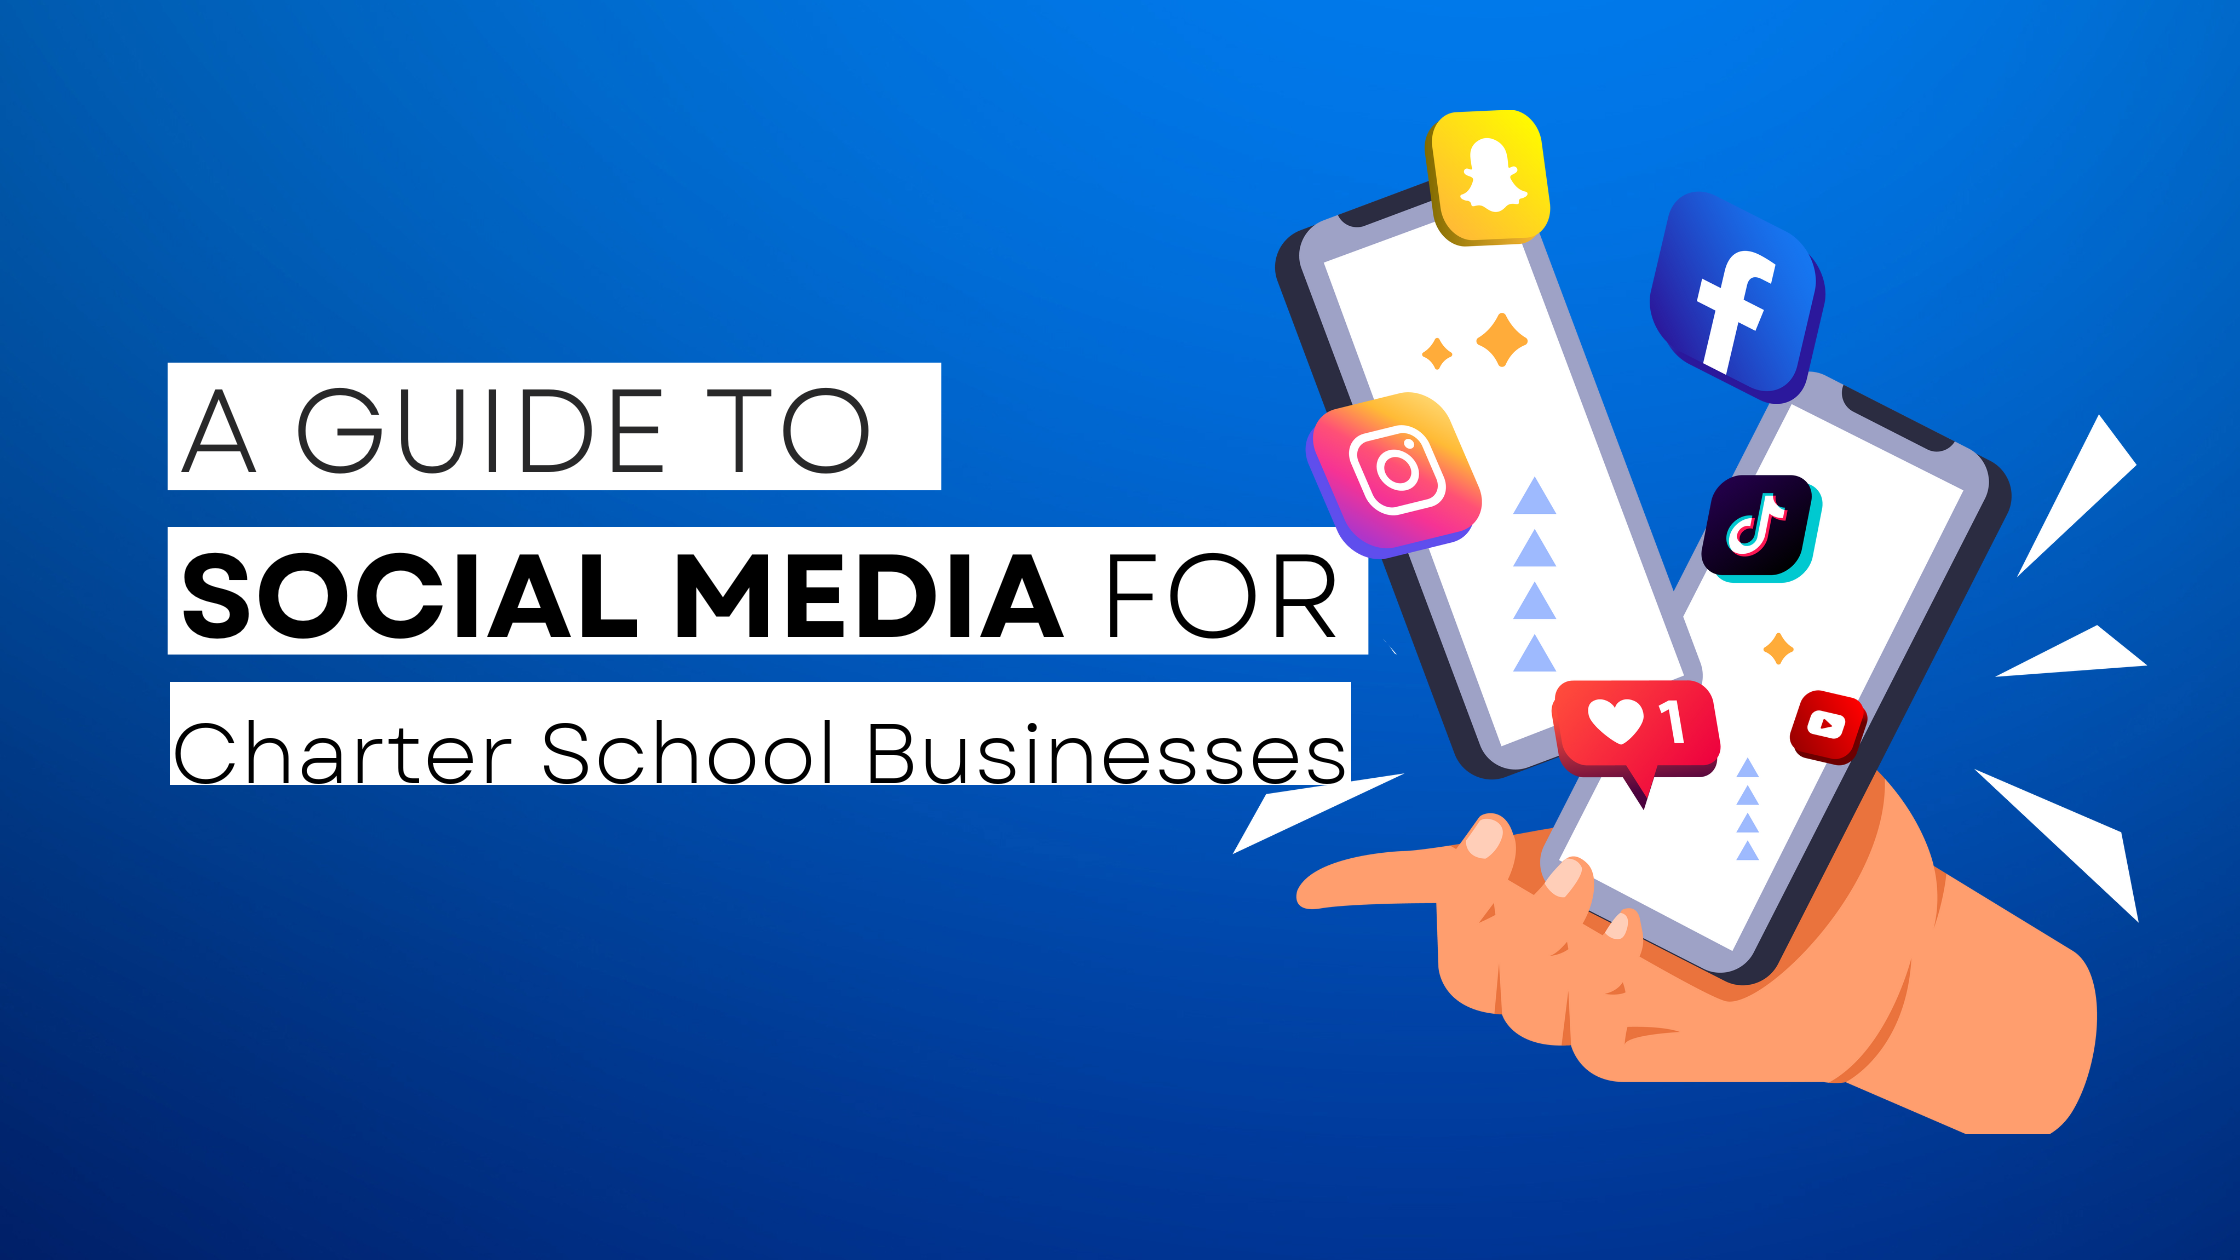 How to start Charter School on social media